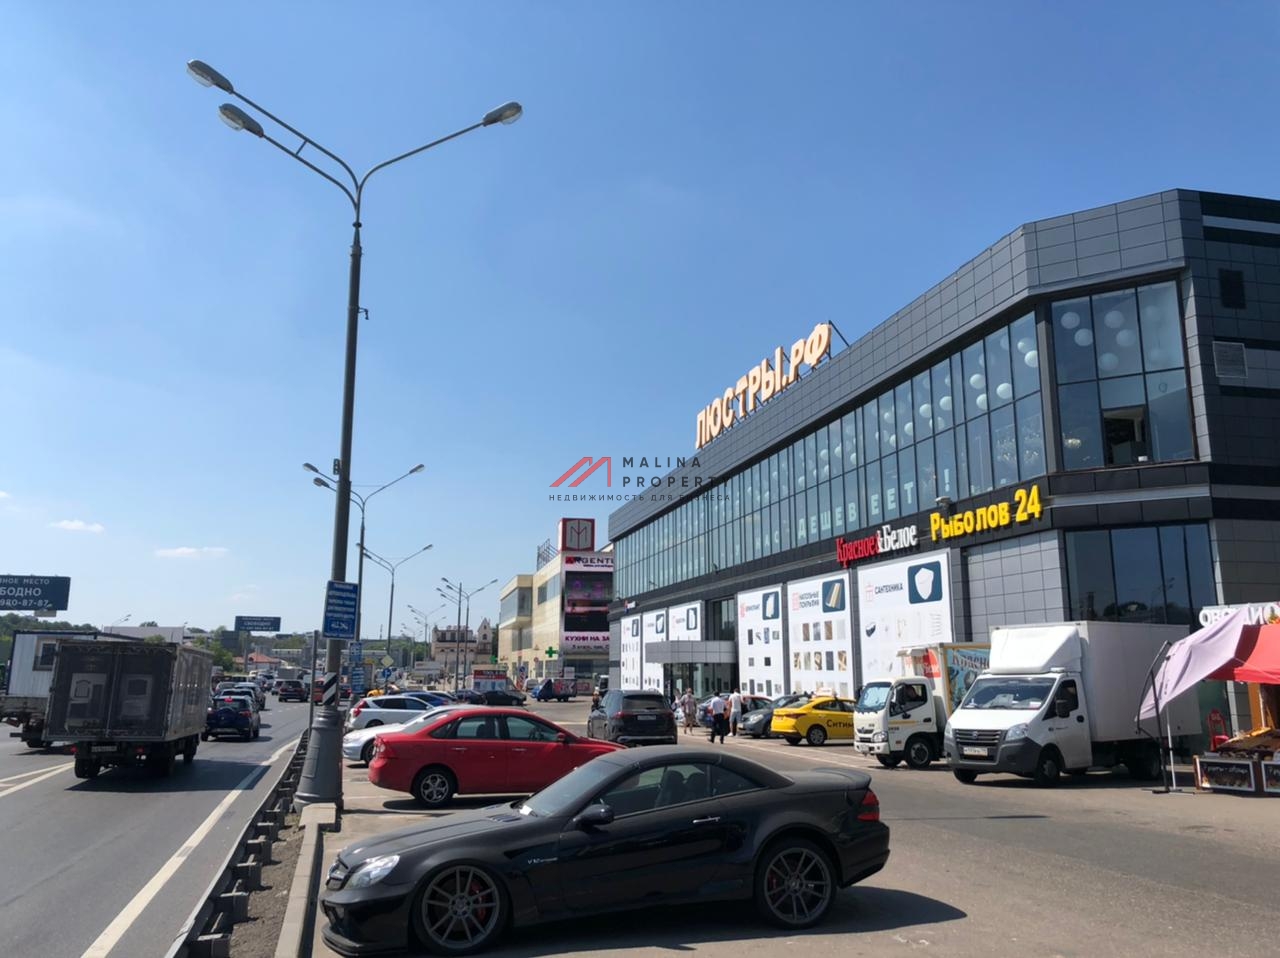 Продажа торгового центра в г. Одинцово